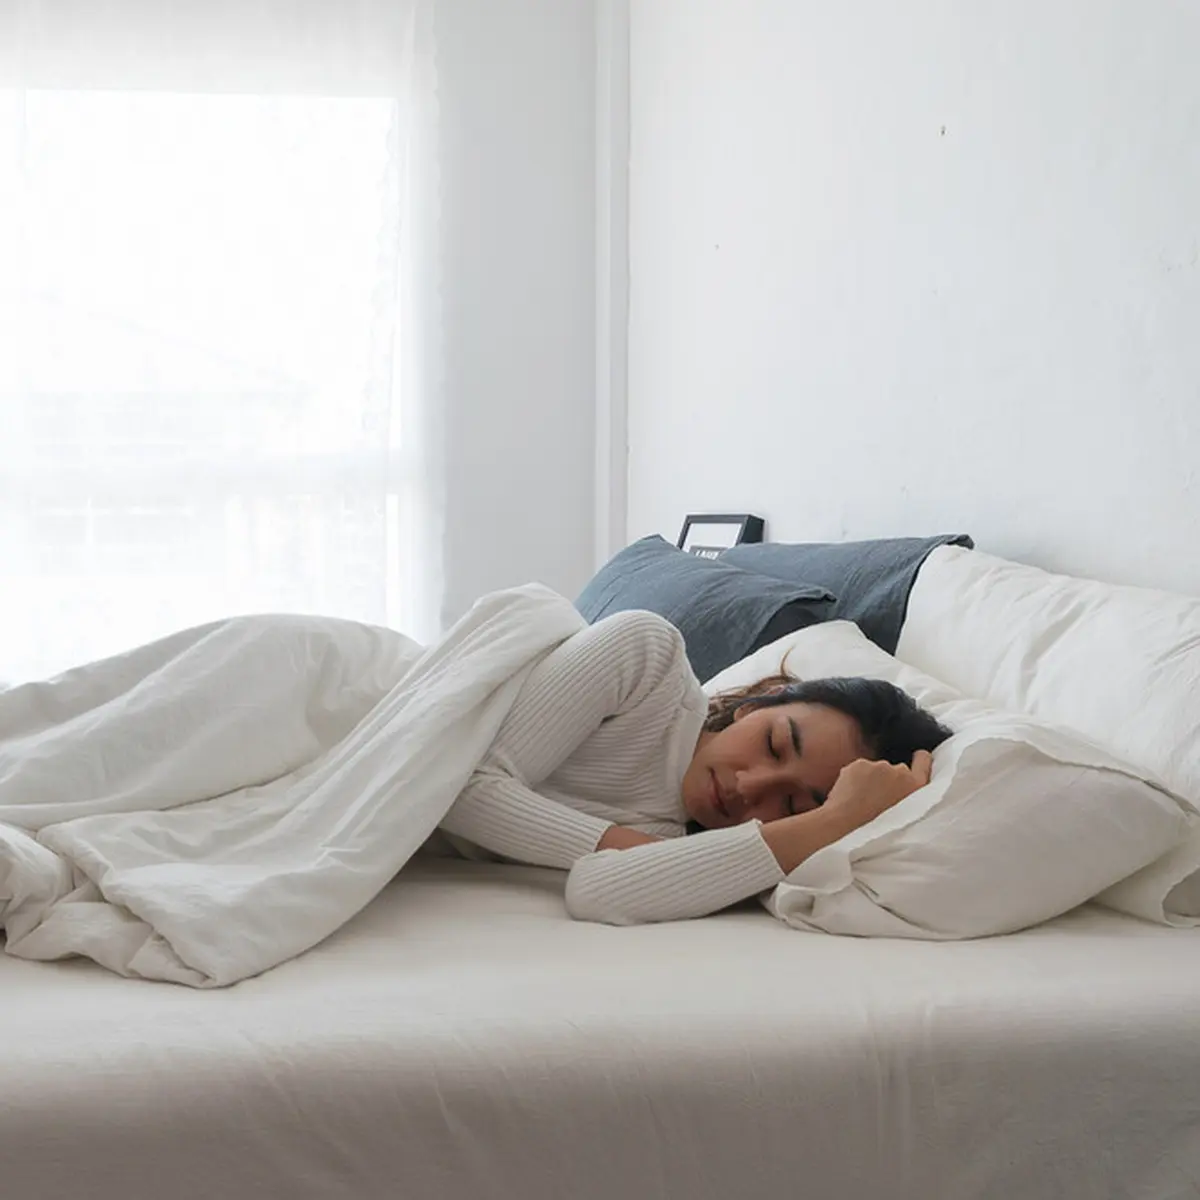 Memakai Bra saat Tidur, Sebenarnya Boleh atau Tidak?